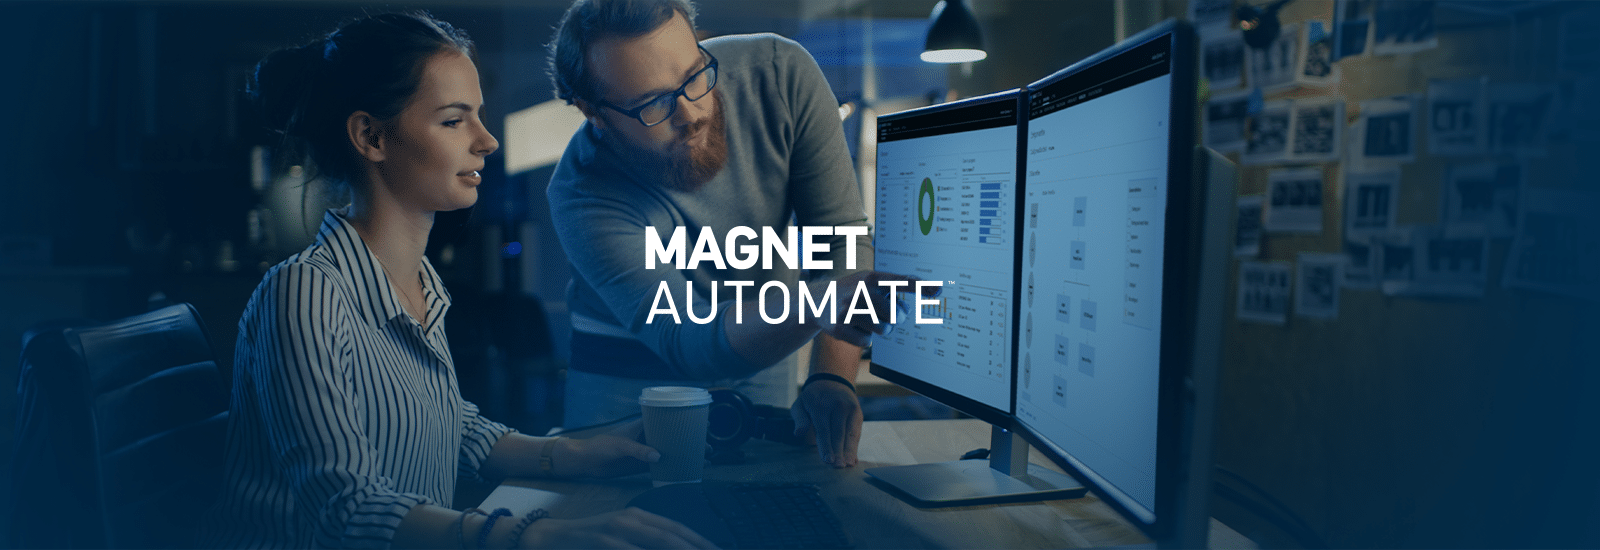 Magnet AUTOMATE Essentials